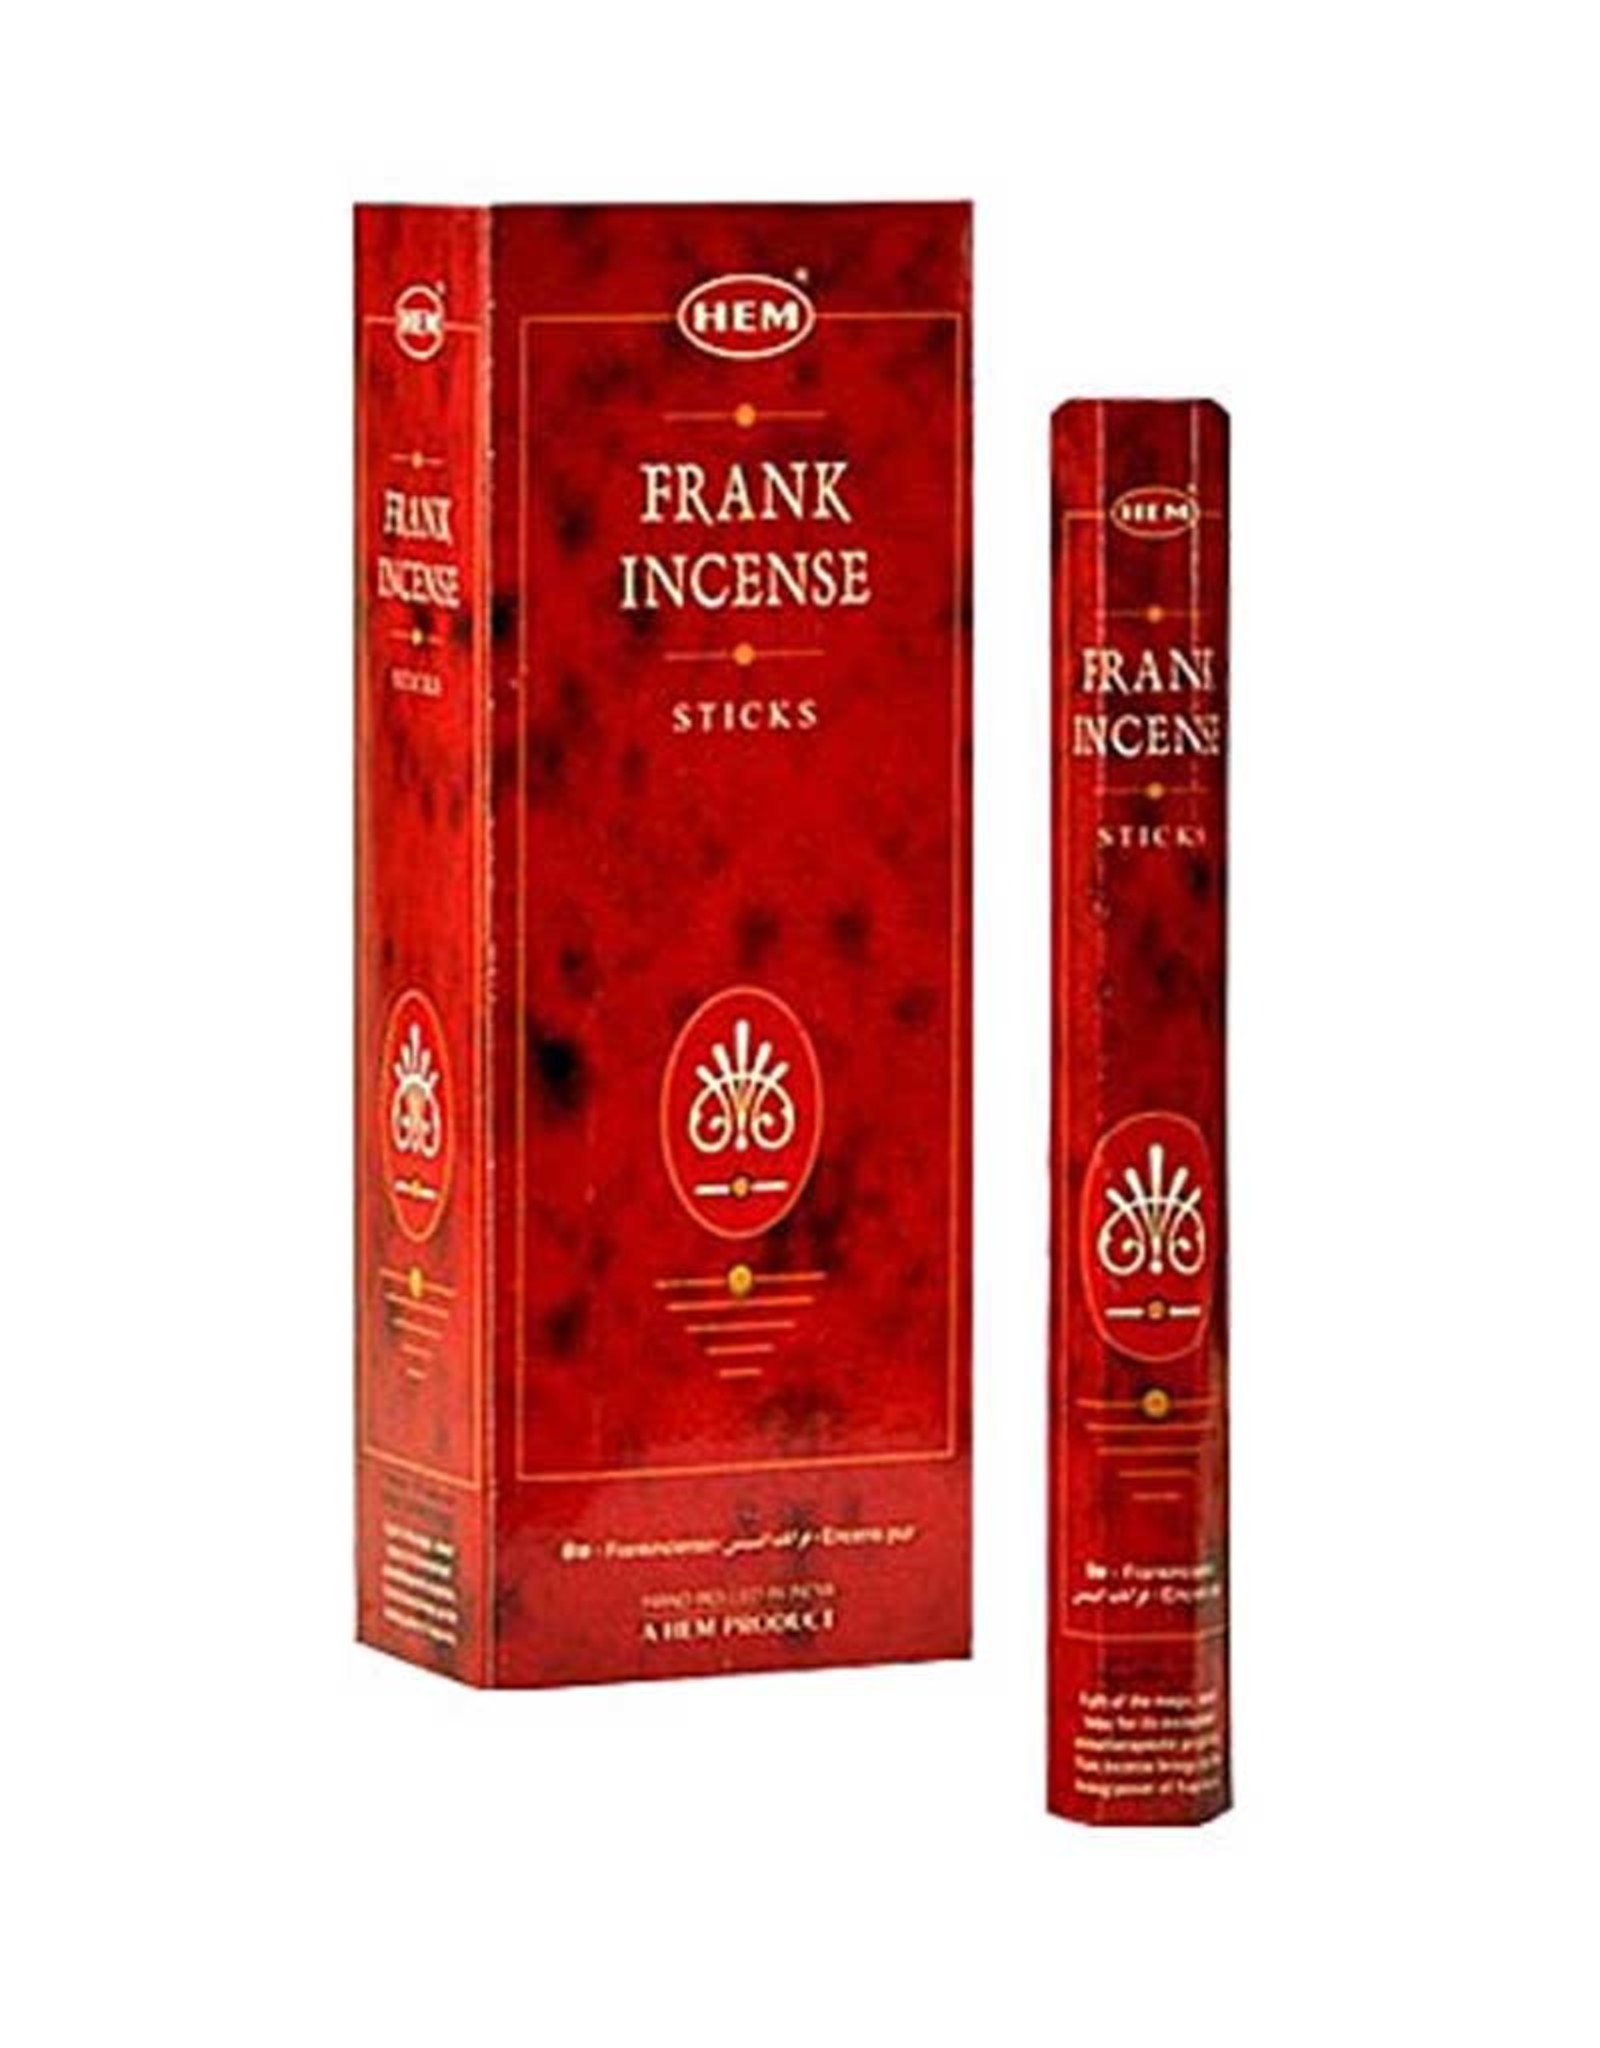 HEM Frankincense HEM Incense Sticks